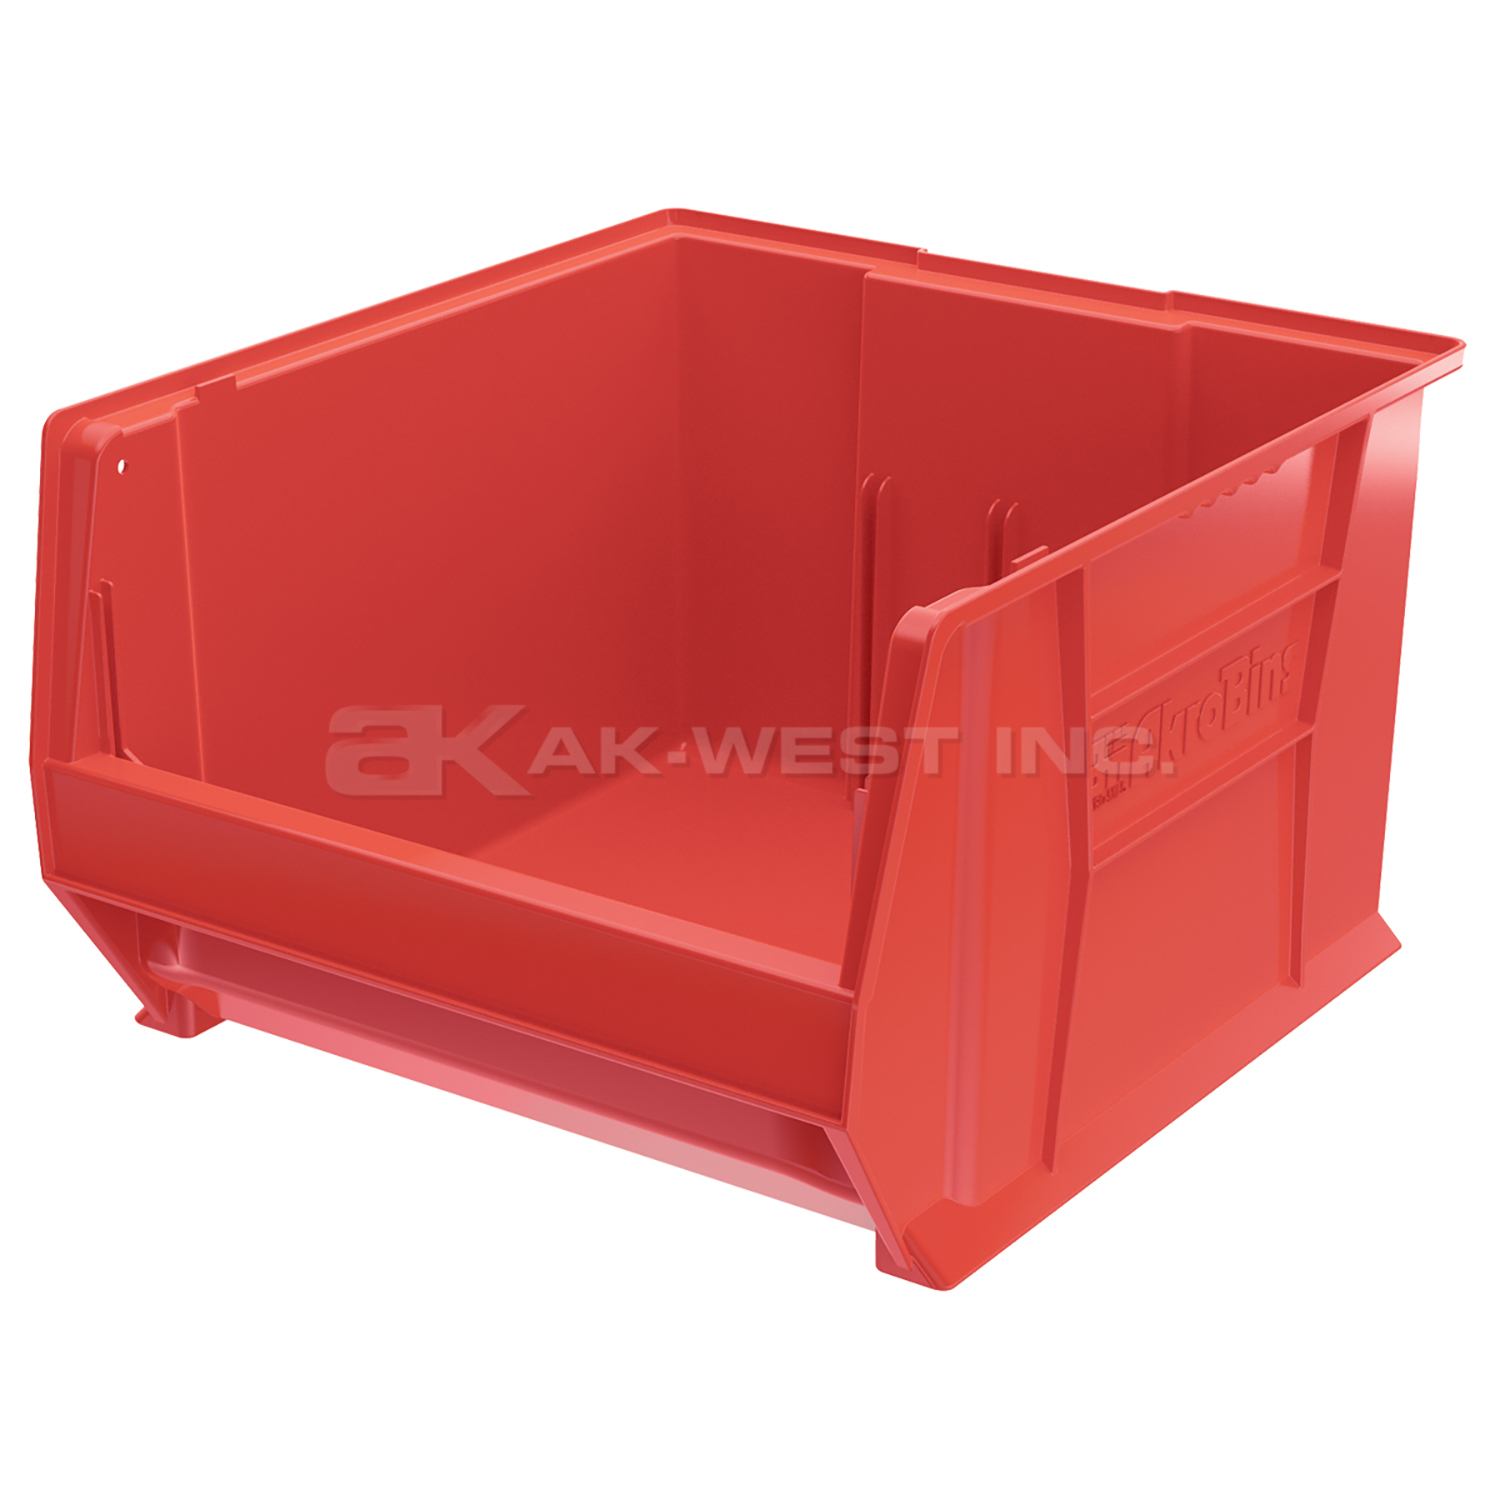 Red, 20" x 18-1/8" x 12" Stacking Shelf Bin (1 Per Carton)